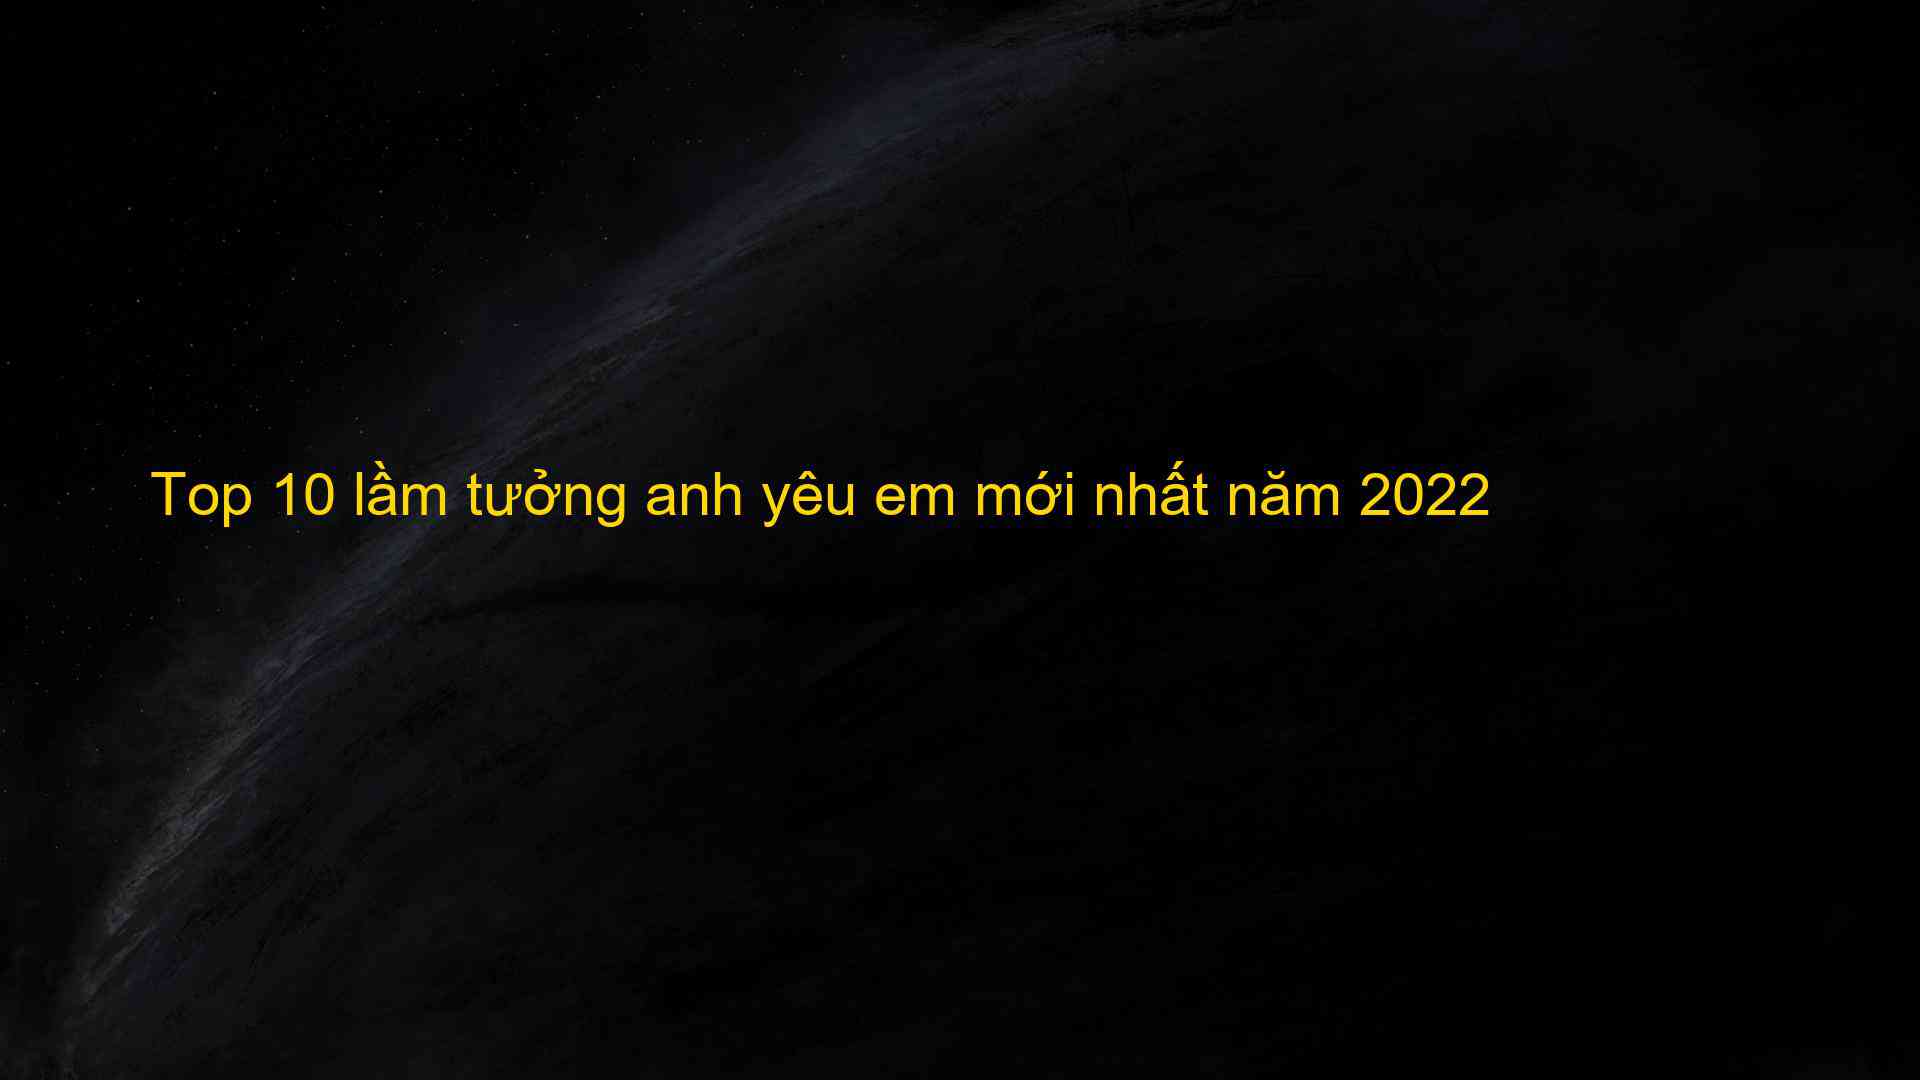 Top 10 lầm tưởng anh yêu em mới nhất năm 2022 - Kiến Thức Cho Người lao Động Việt Nam